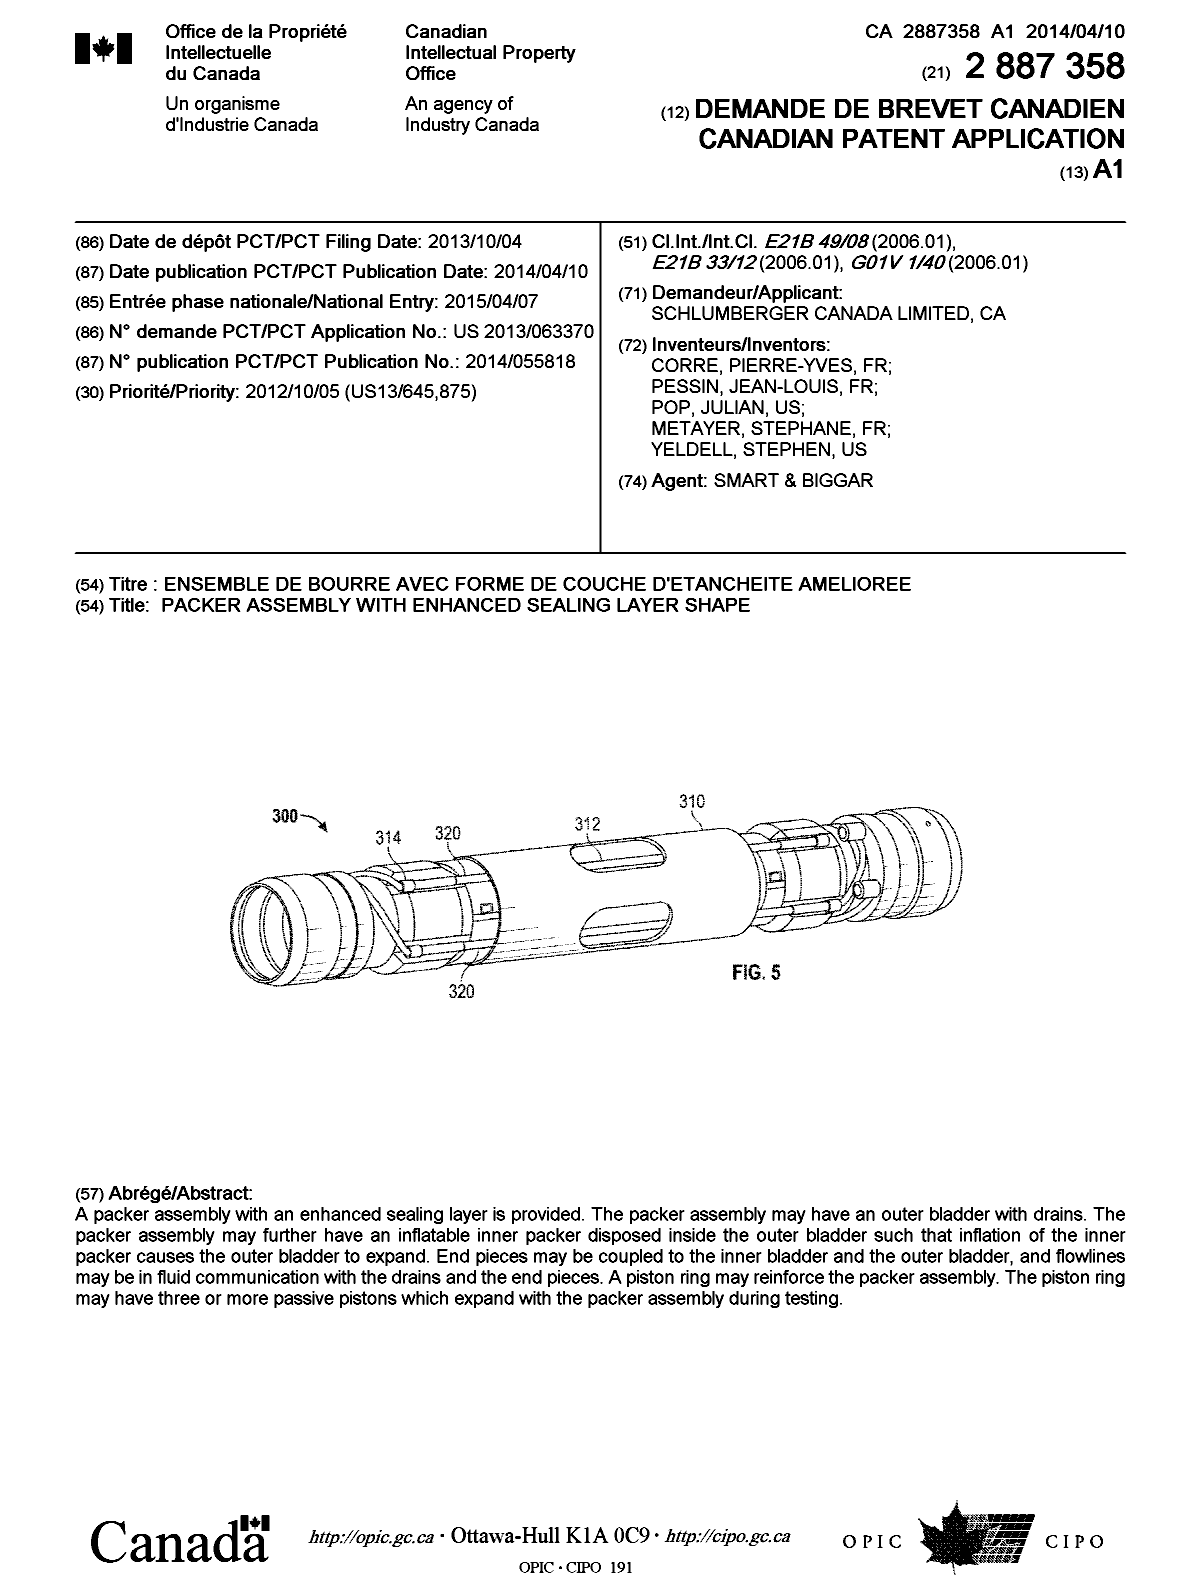 Document de brevet canadien 2887358. Page couverture 20141224. Image 1 de 1